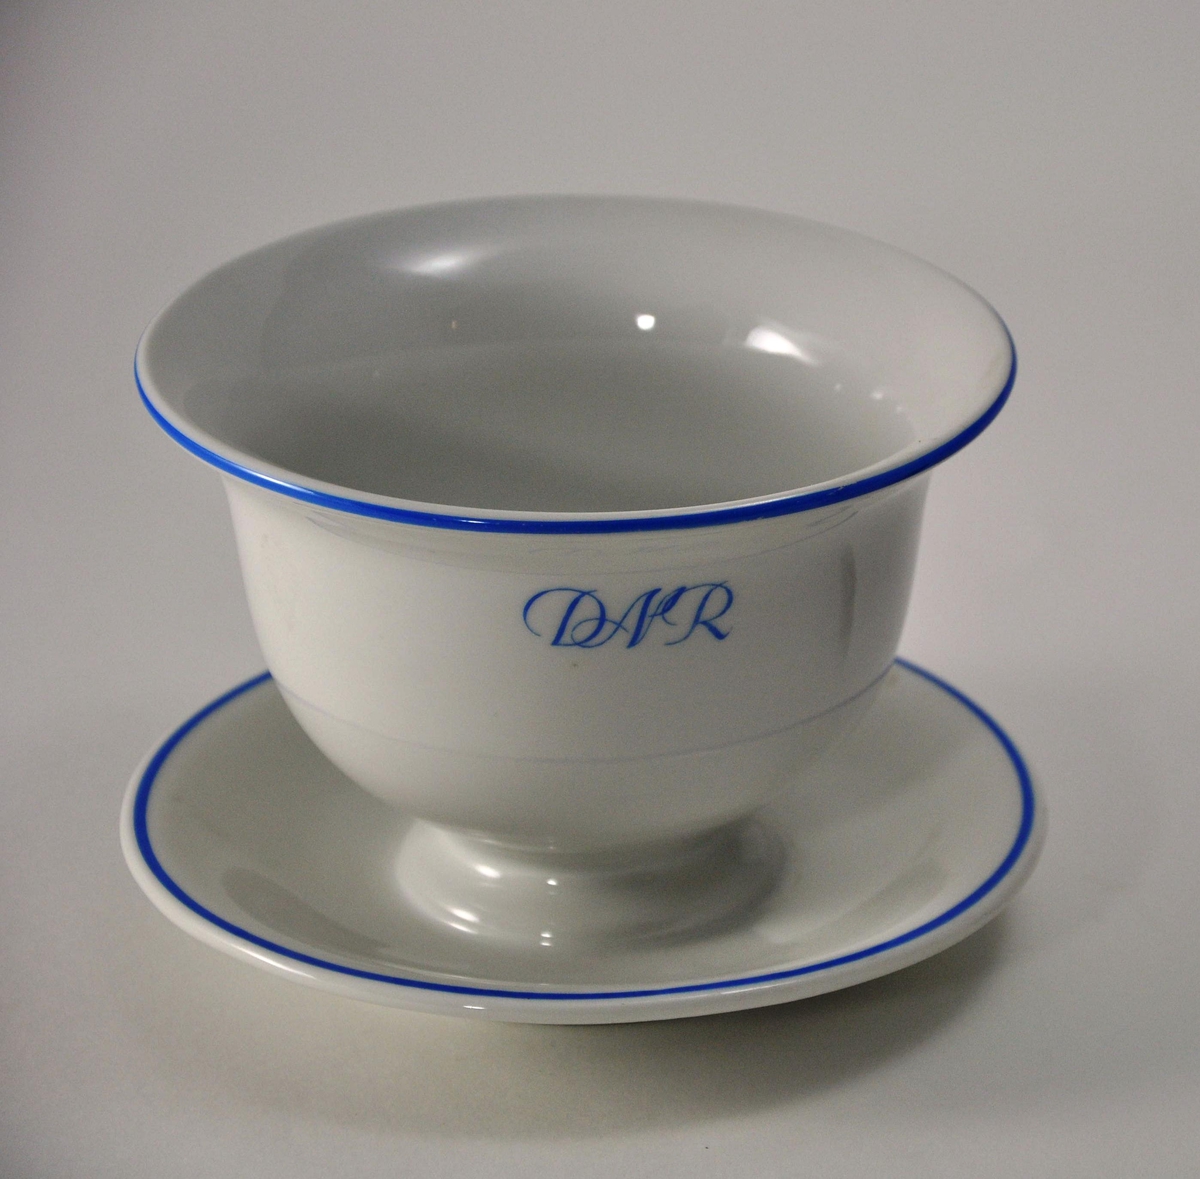 Sausebolle på skål i hvit porselen. A/S Den Norske Reiseeffektfabriks initialer "DNR" og munningsrand er påmalt i blått.